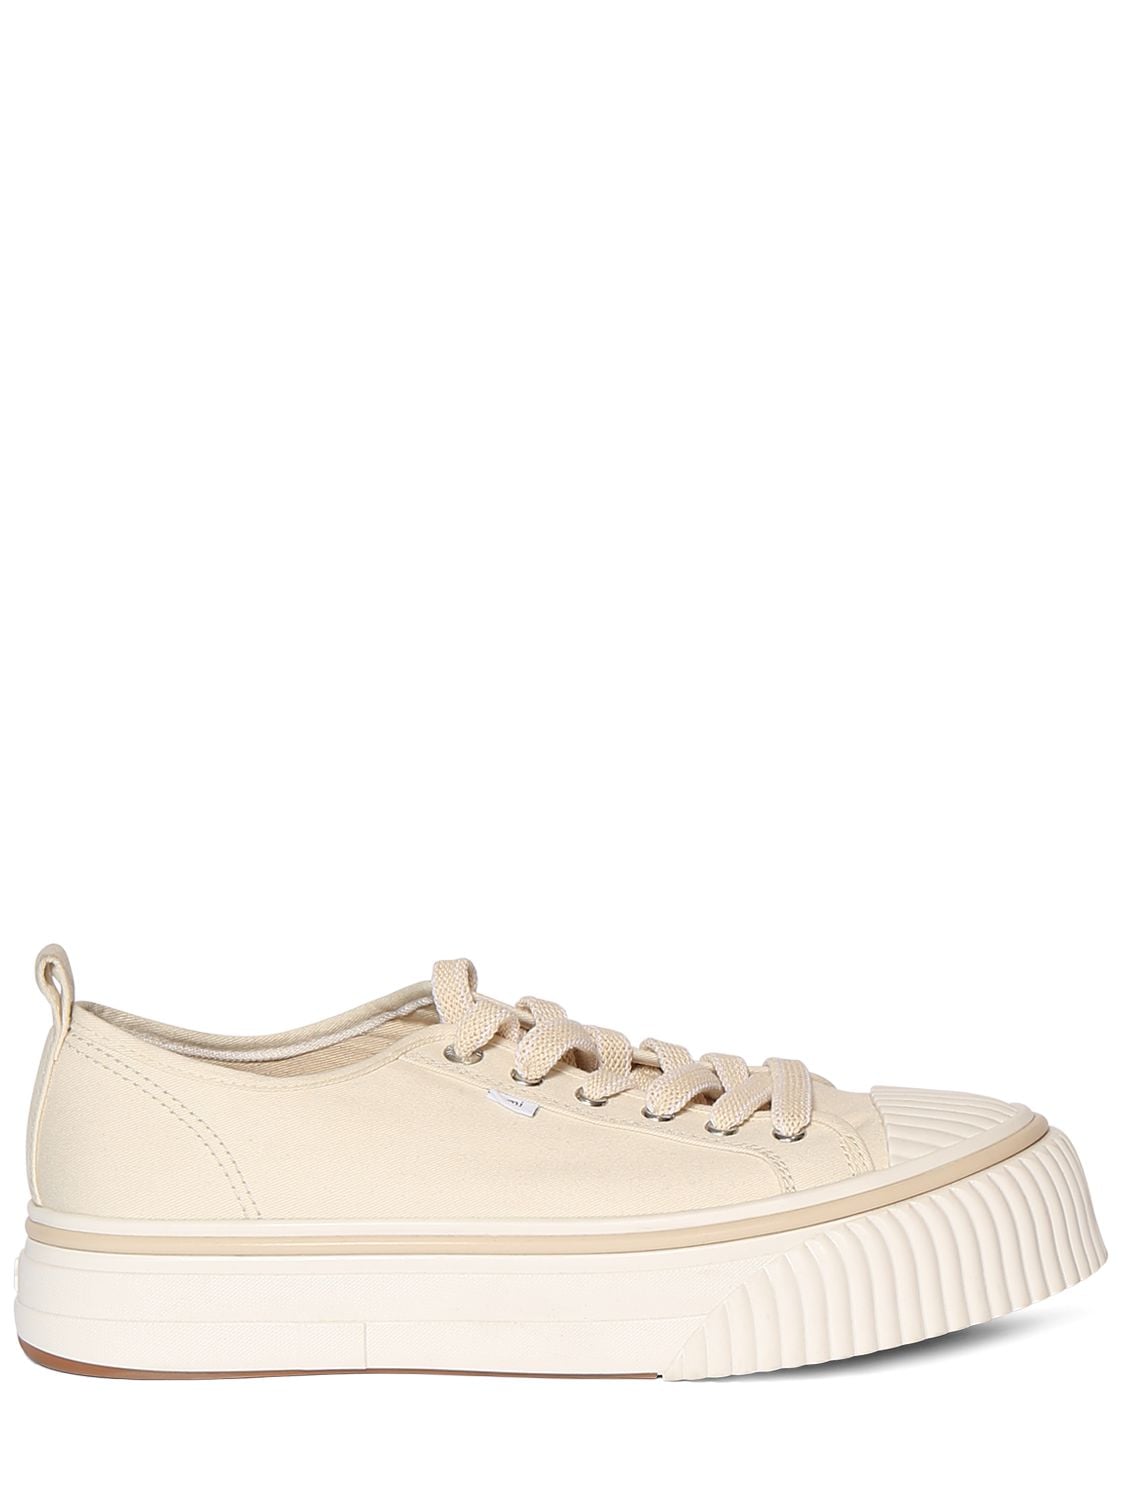 Ami Alexandre Mattiussi Ami Cotton Low Top Sneakers In Off White